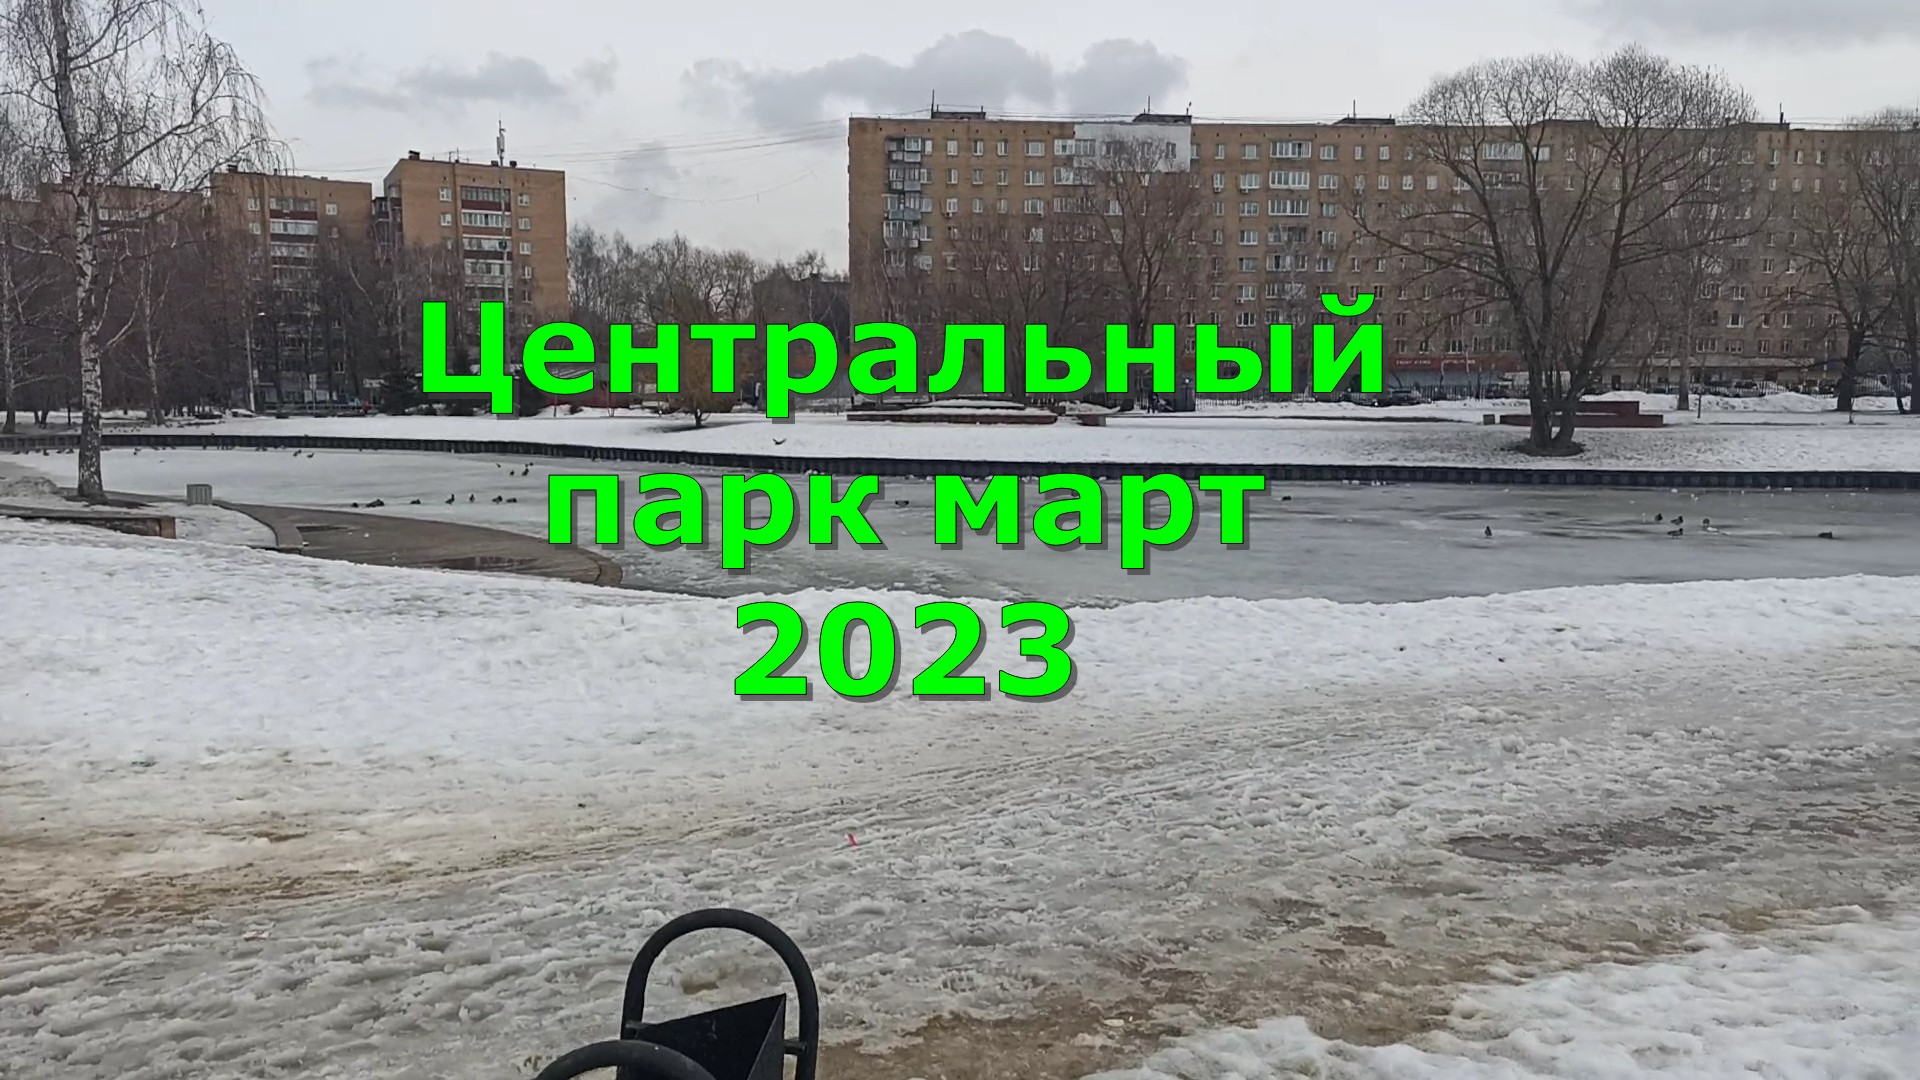 Центральный парк март 2023 Долгопрудный